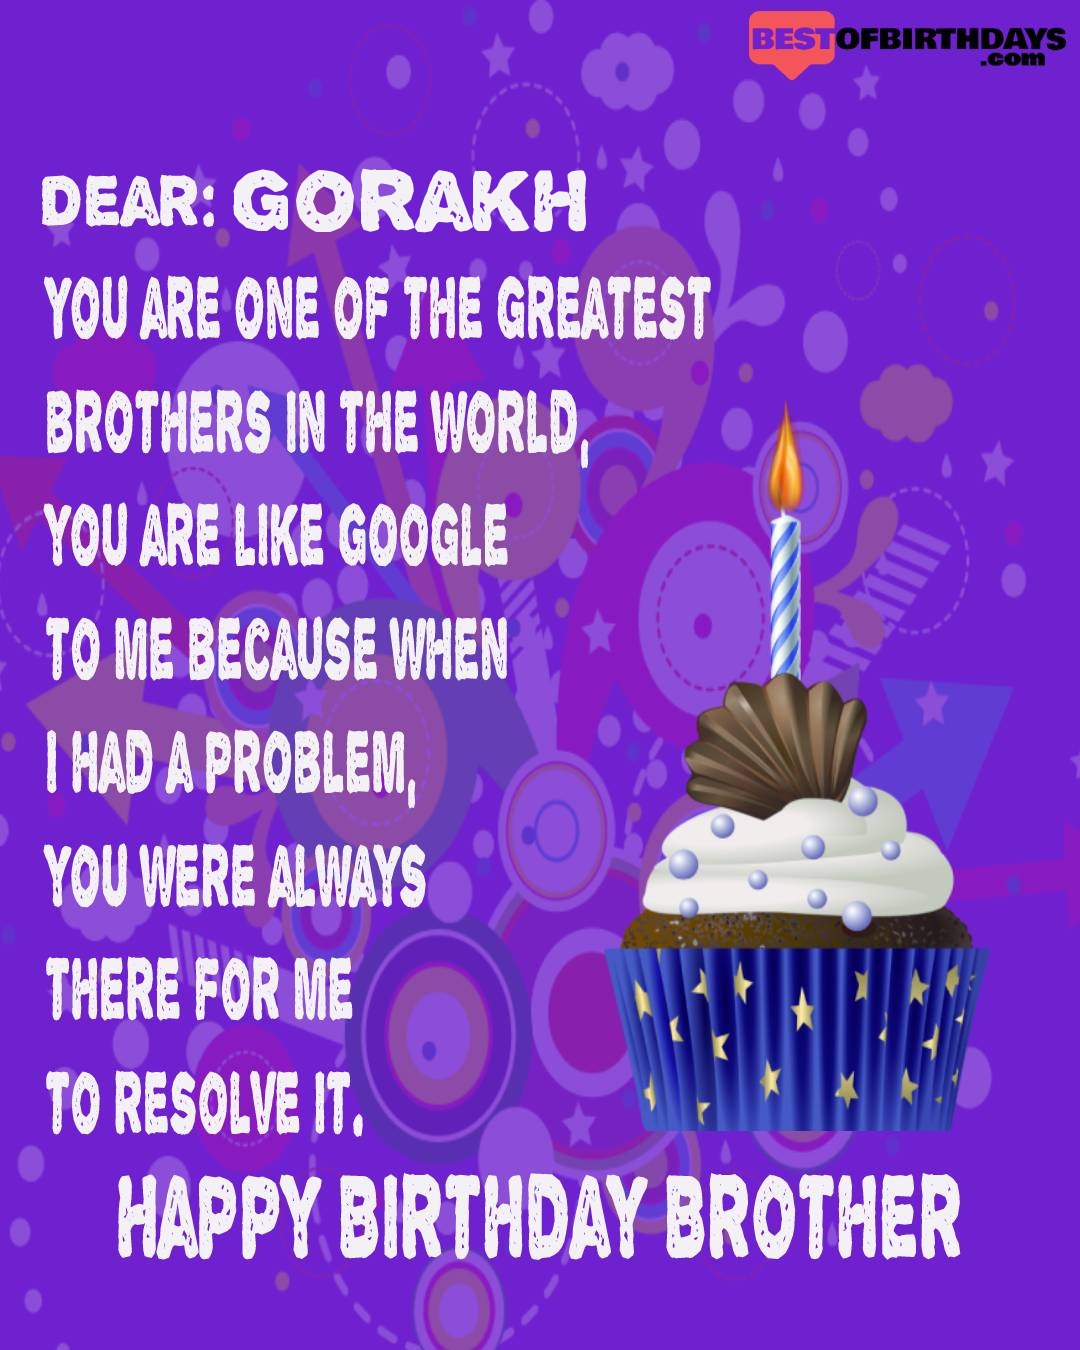 Happy birthday gorakh bhai brother bro